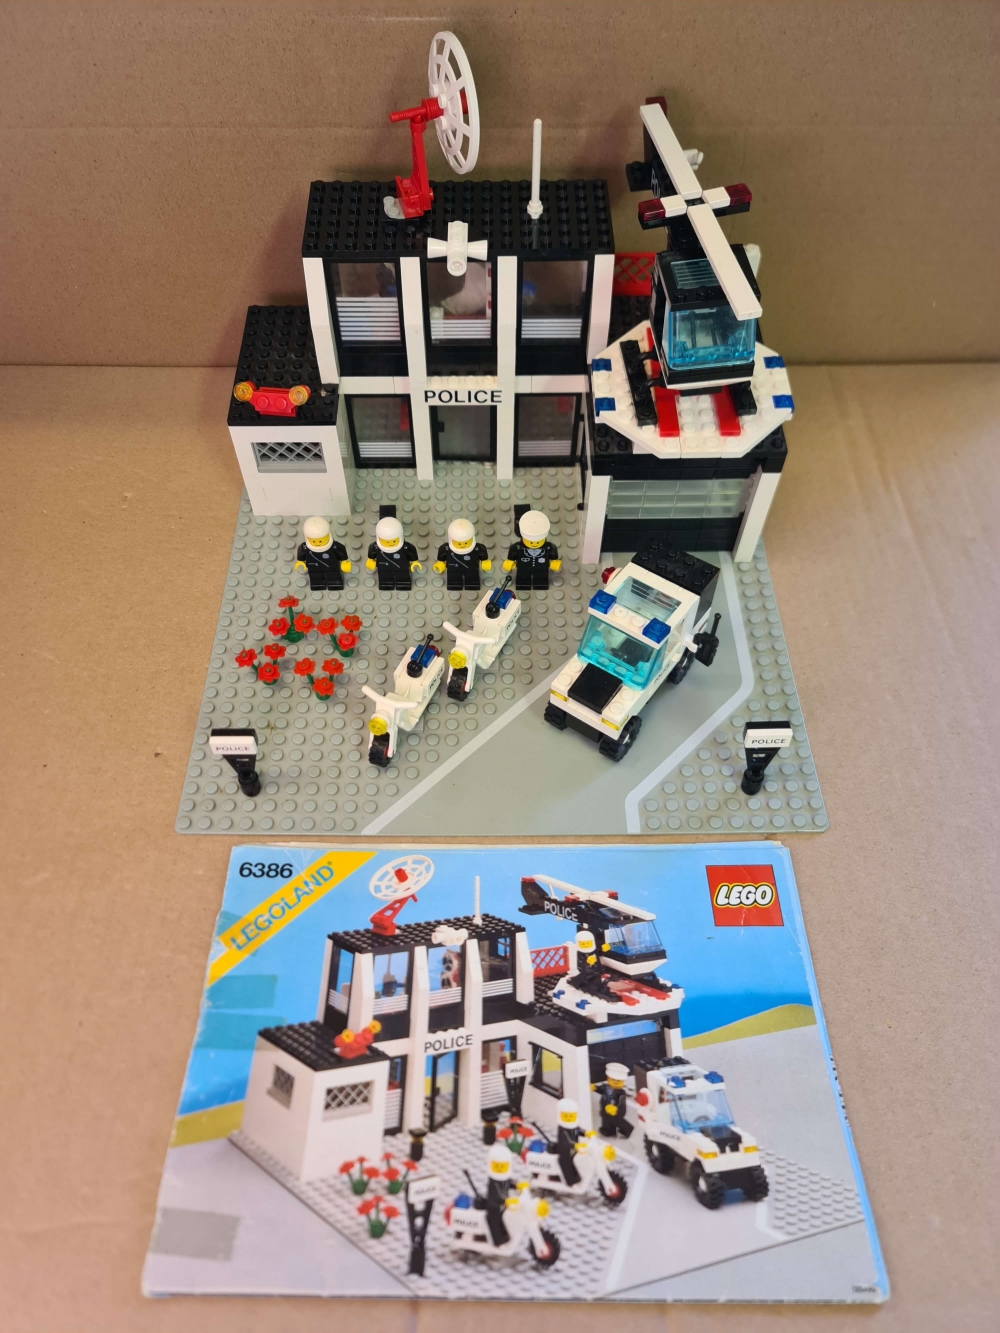 Sett 6386 fra Lego Classic Town serien.
Komplett med manual.
Settet har bruksmerker og noe nyansevariasjon i hvite brikker.
Platen hadde en liten skade så den er byttet ut med en fin.
Se bilder.